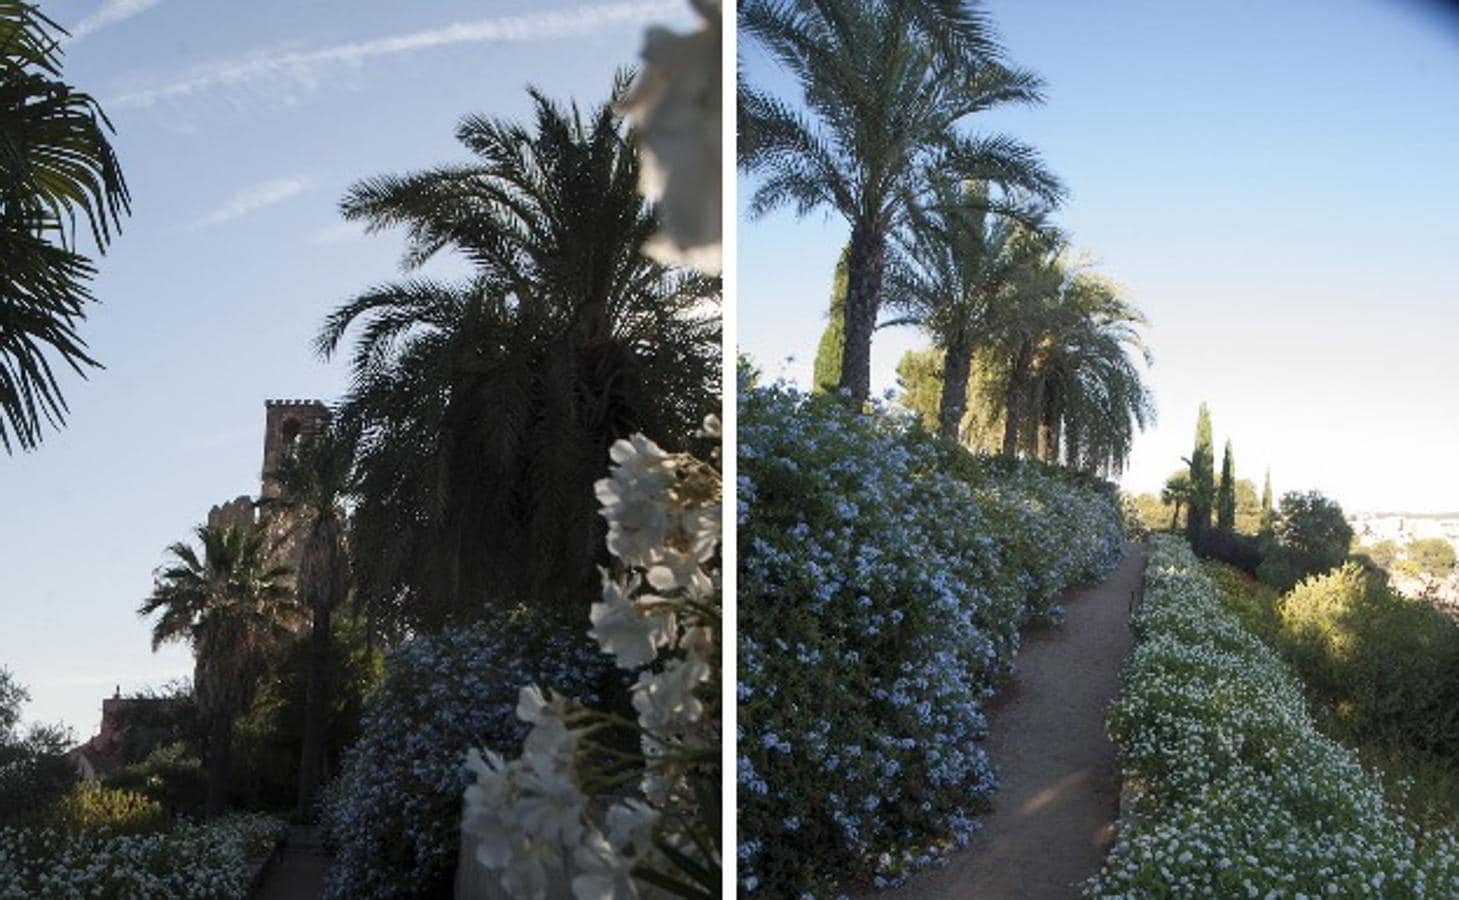 Los jardines de la Galera son un rincón precioso con pasadizos y recodos, pegado a la Torre de Espantaperros.